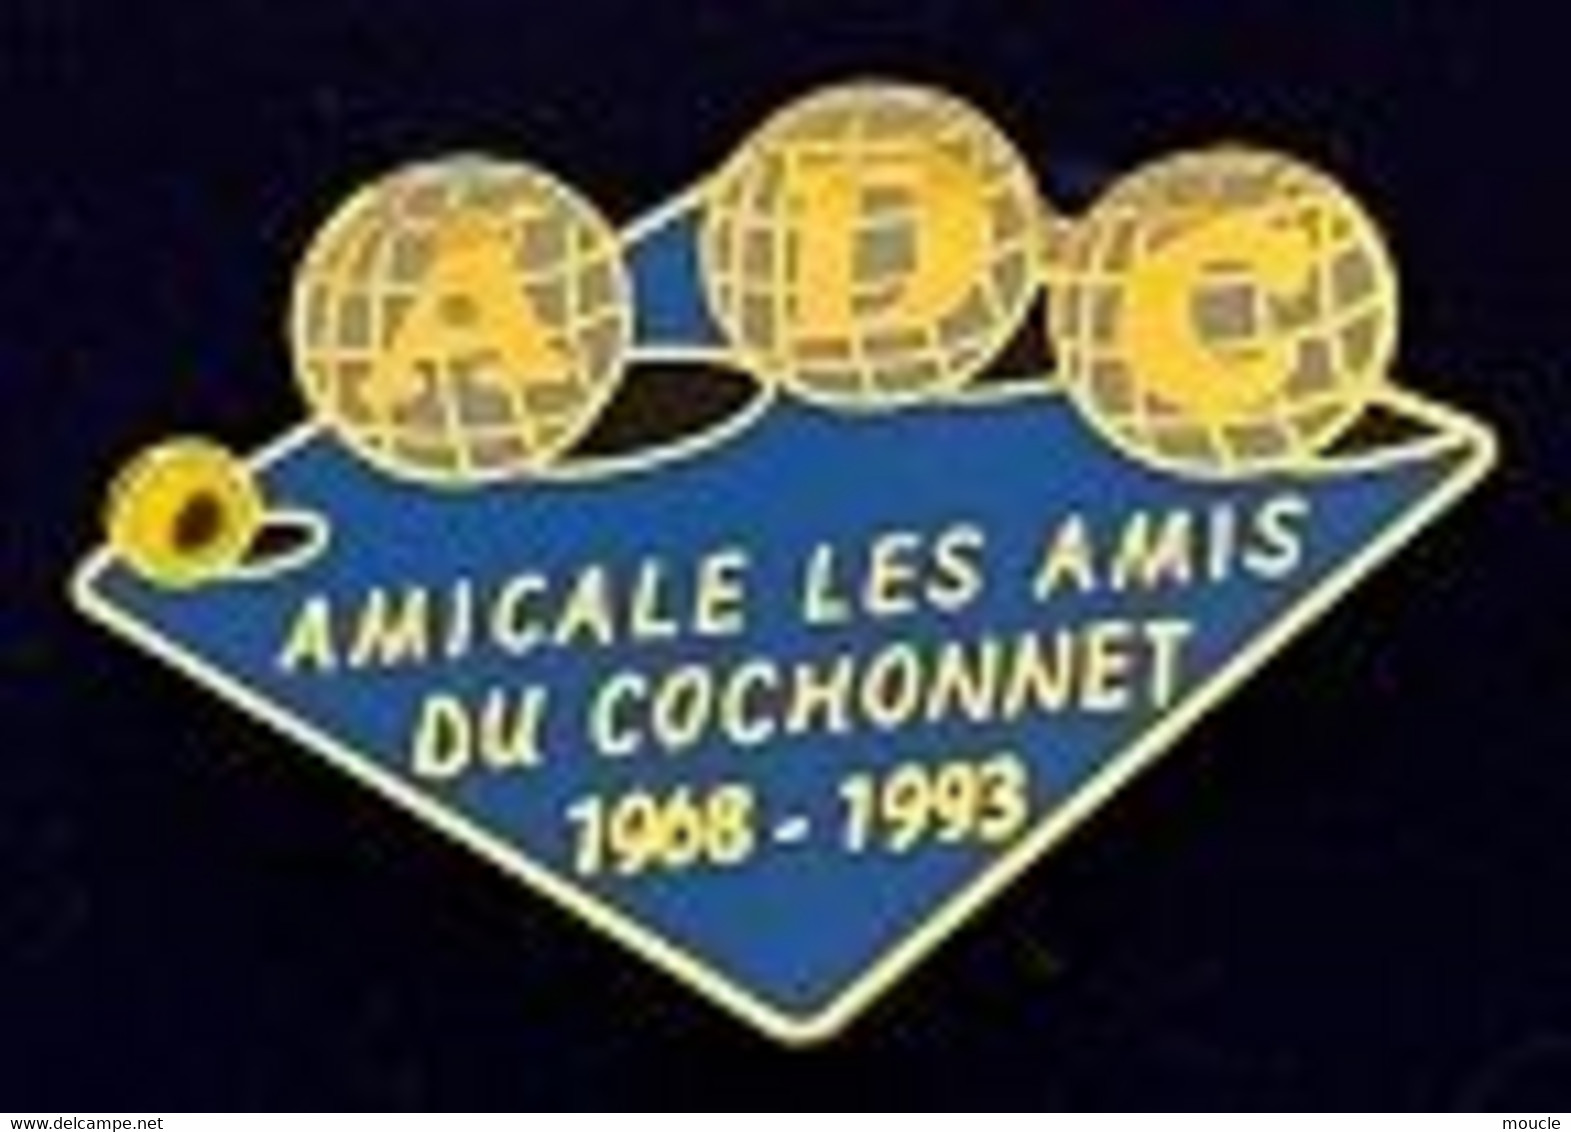 AMICALE LES AMIS DU COCHONNET - 1968 / 1993 - BOULES - PETIT - EGF - ADC - SUISSE - SVIZZERA - SCHWEIZ - (29) - Bowls - Pétanque